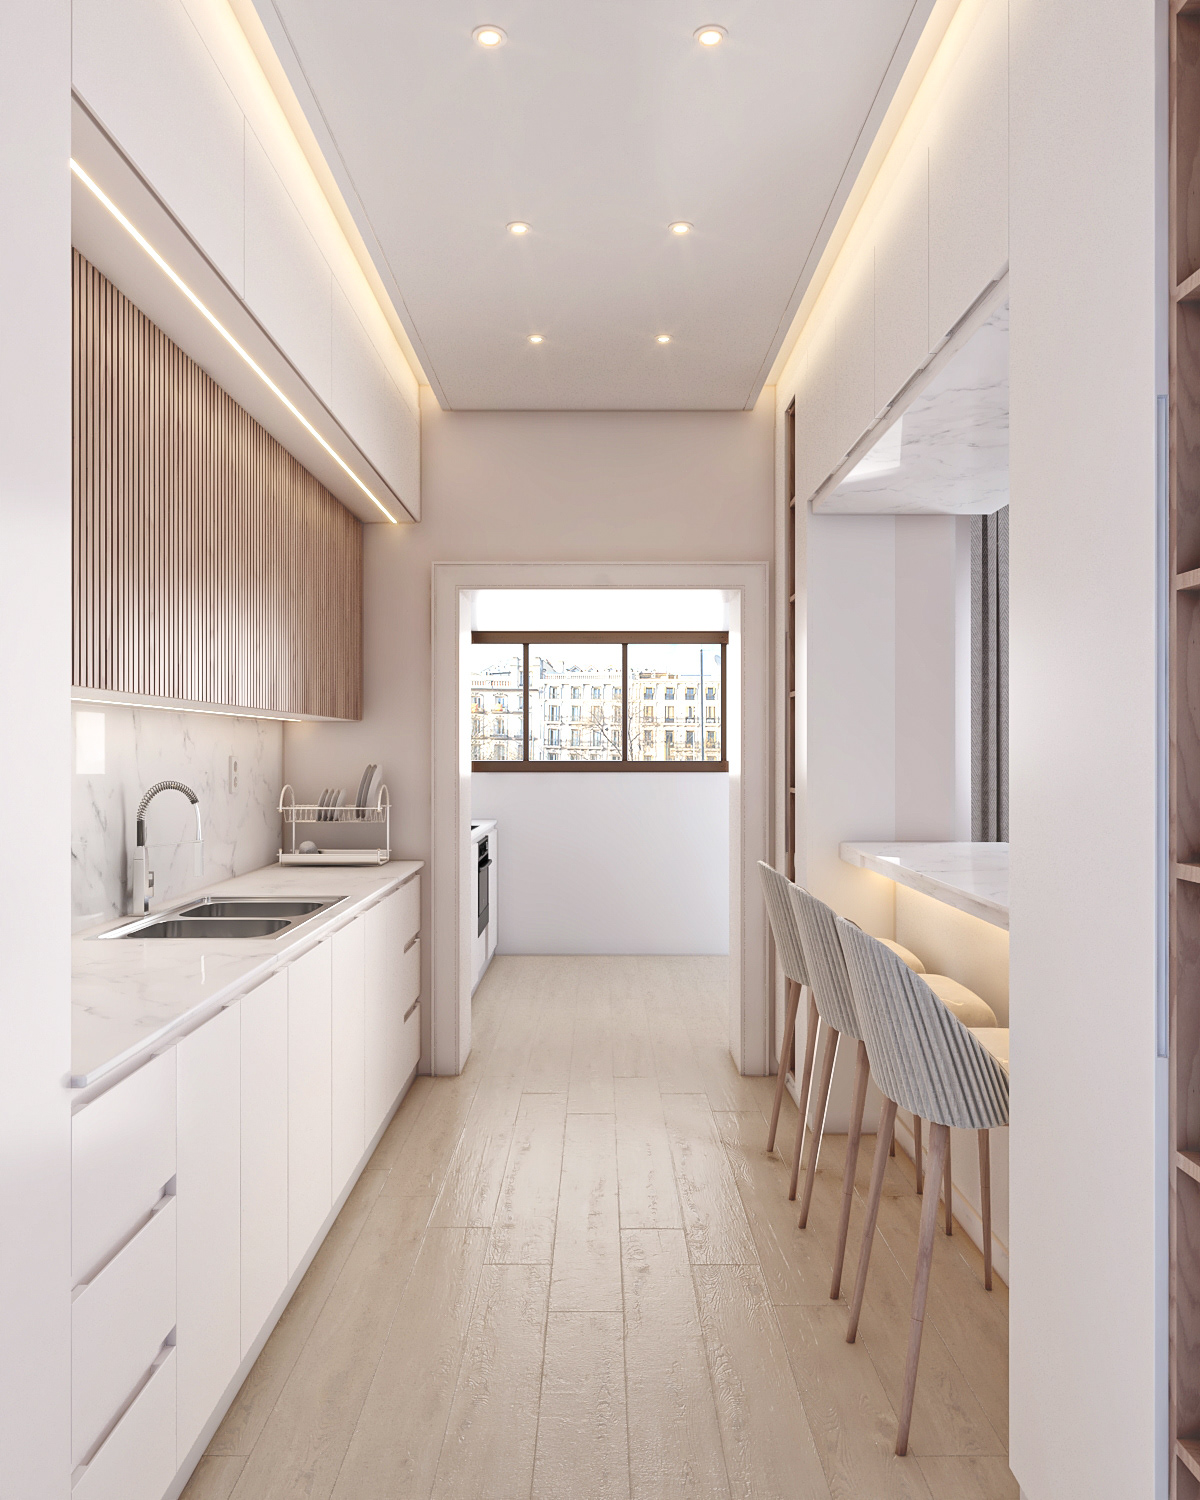 indoor 3ds max Render visualization interior design  architecture modern